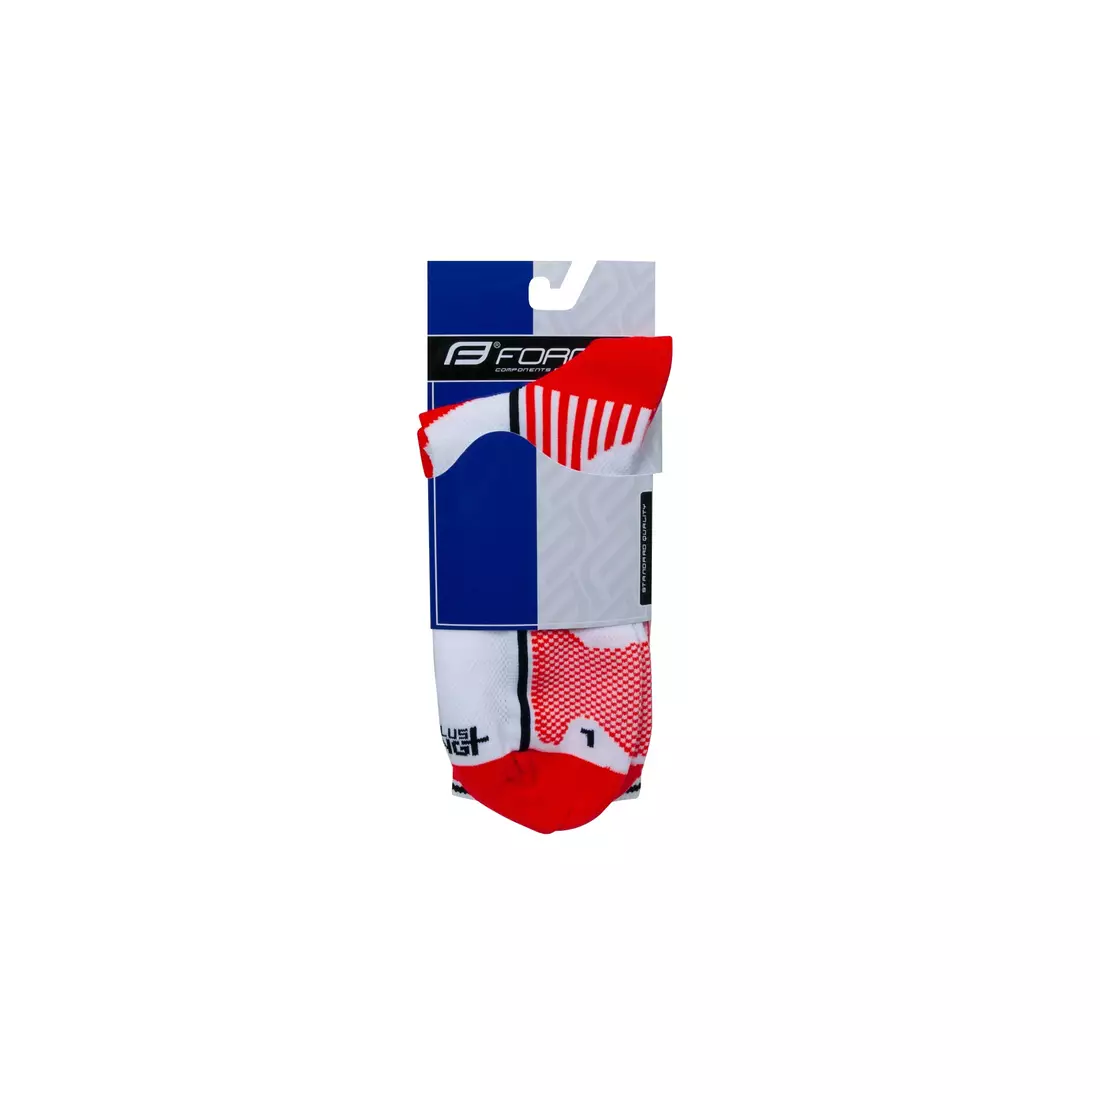 FORCE LONG PLUS Socken 900955-900965 rot und weiß